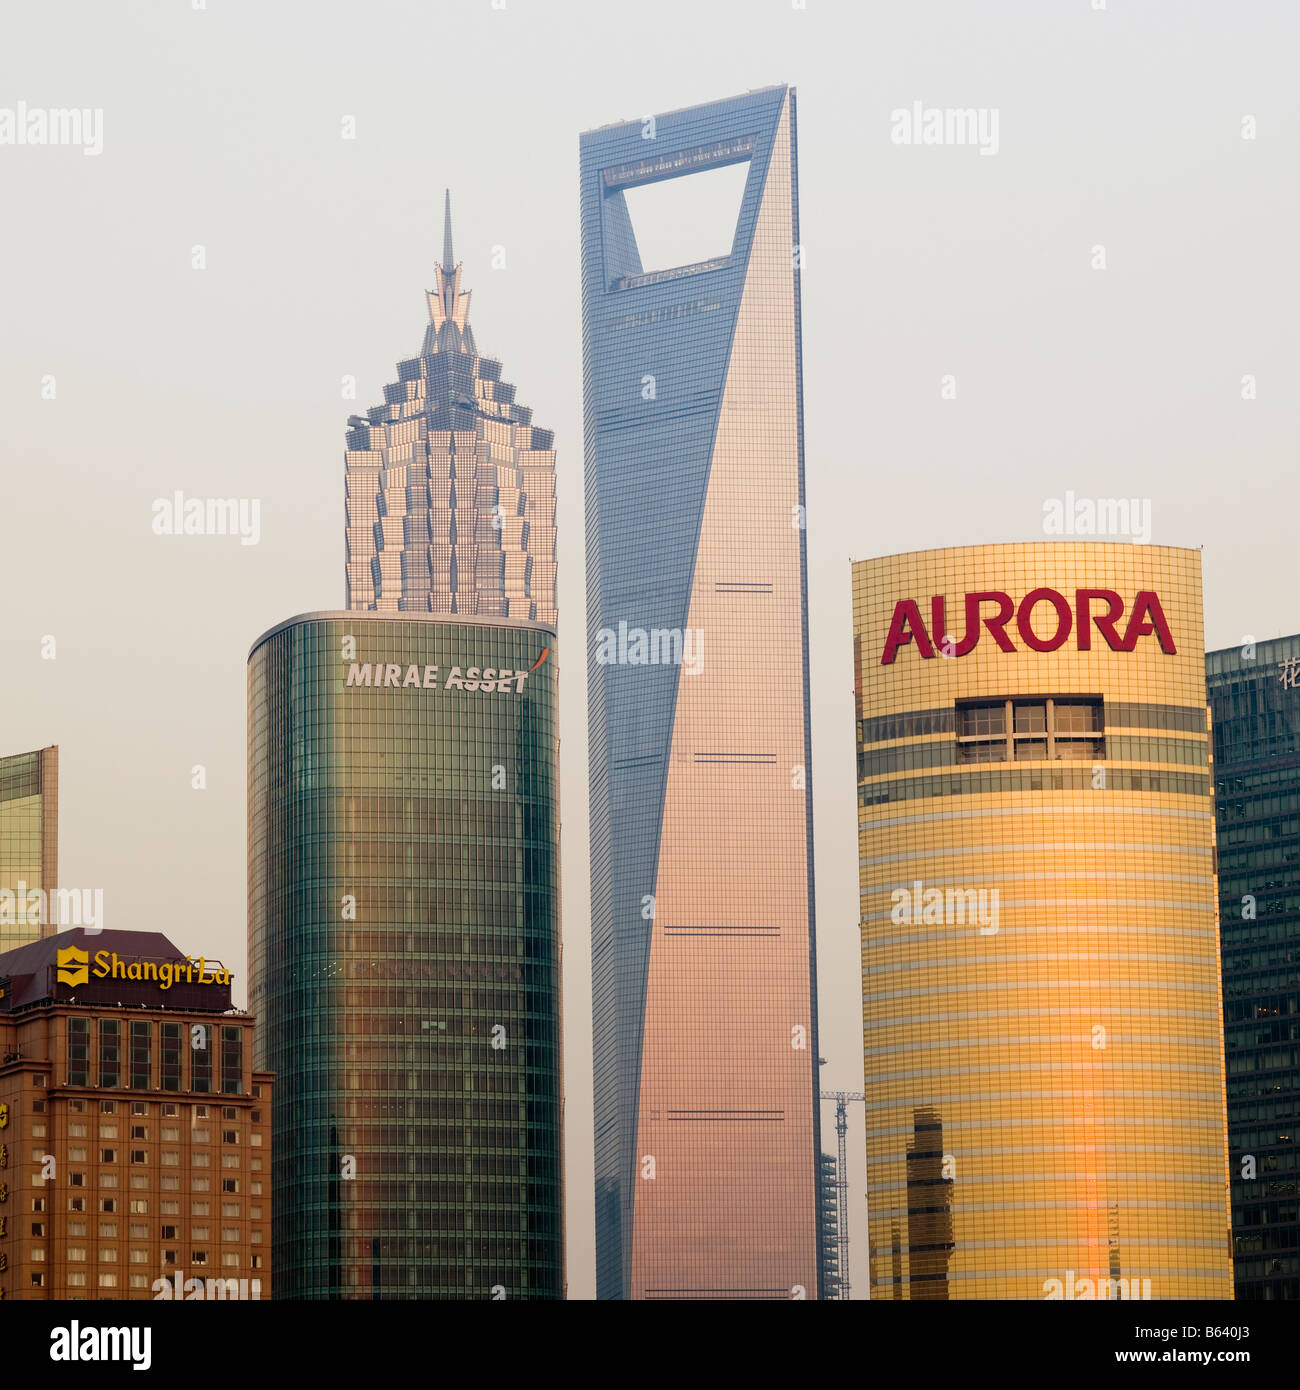 Shanghai bund shanghai skyline world trade centre du quartier des affaires de Pudong logos d'entreprise ont besoin de retirer de l'utilisation ad & promo Banque D'Images